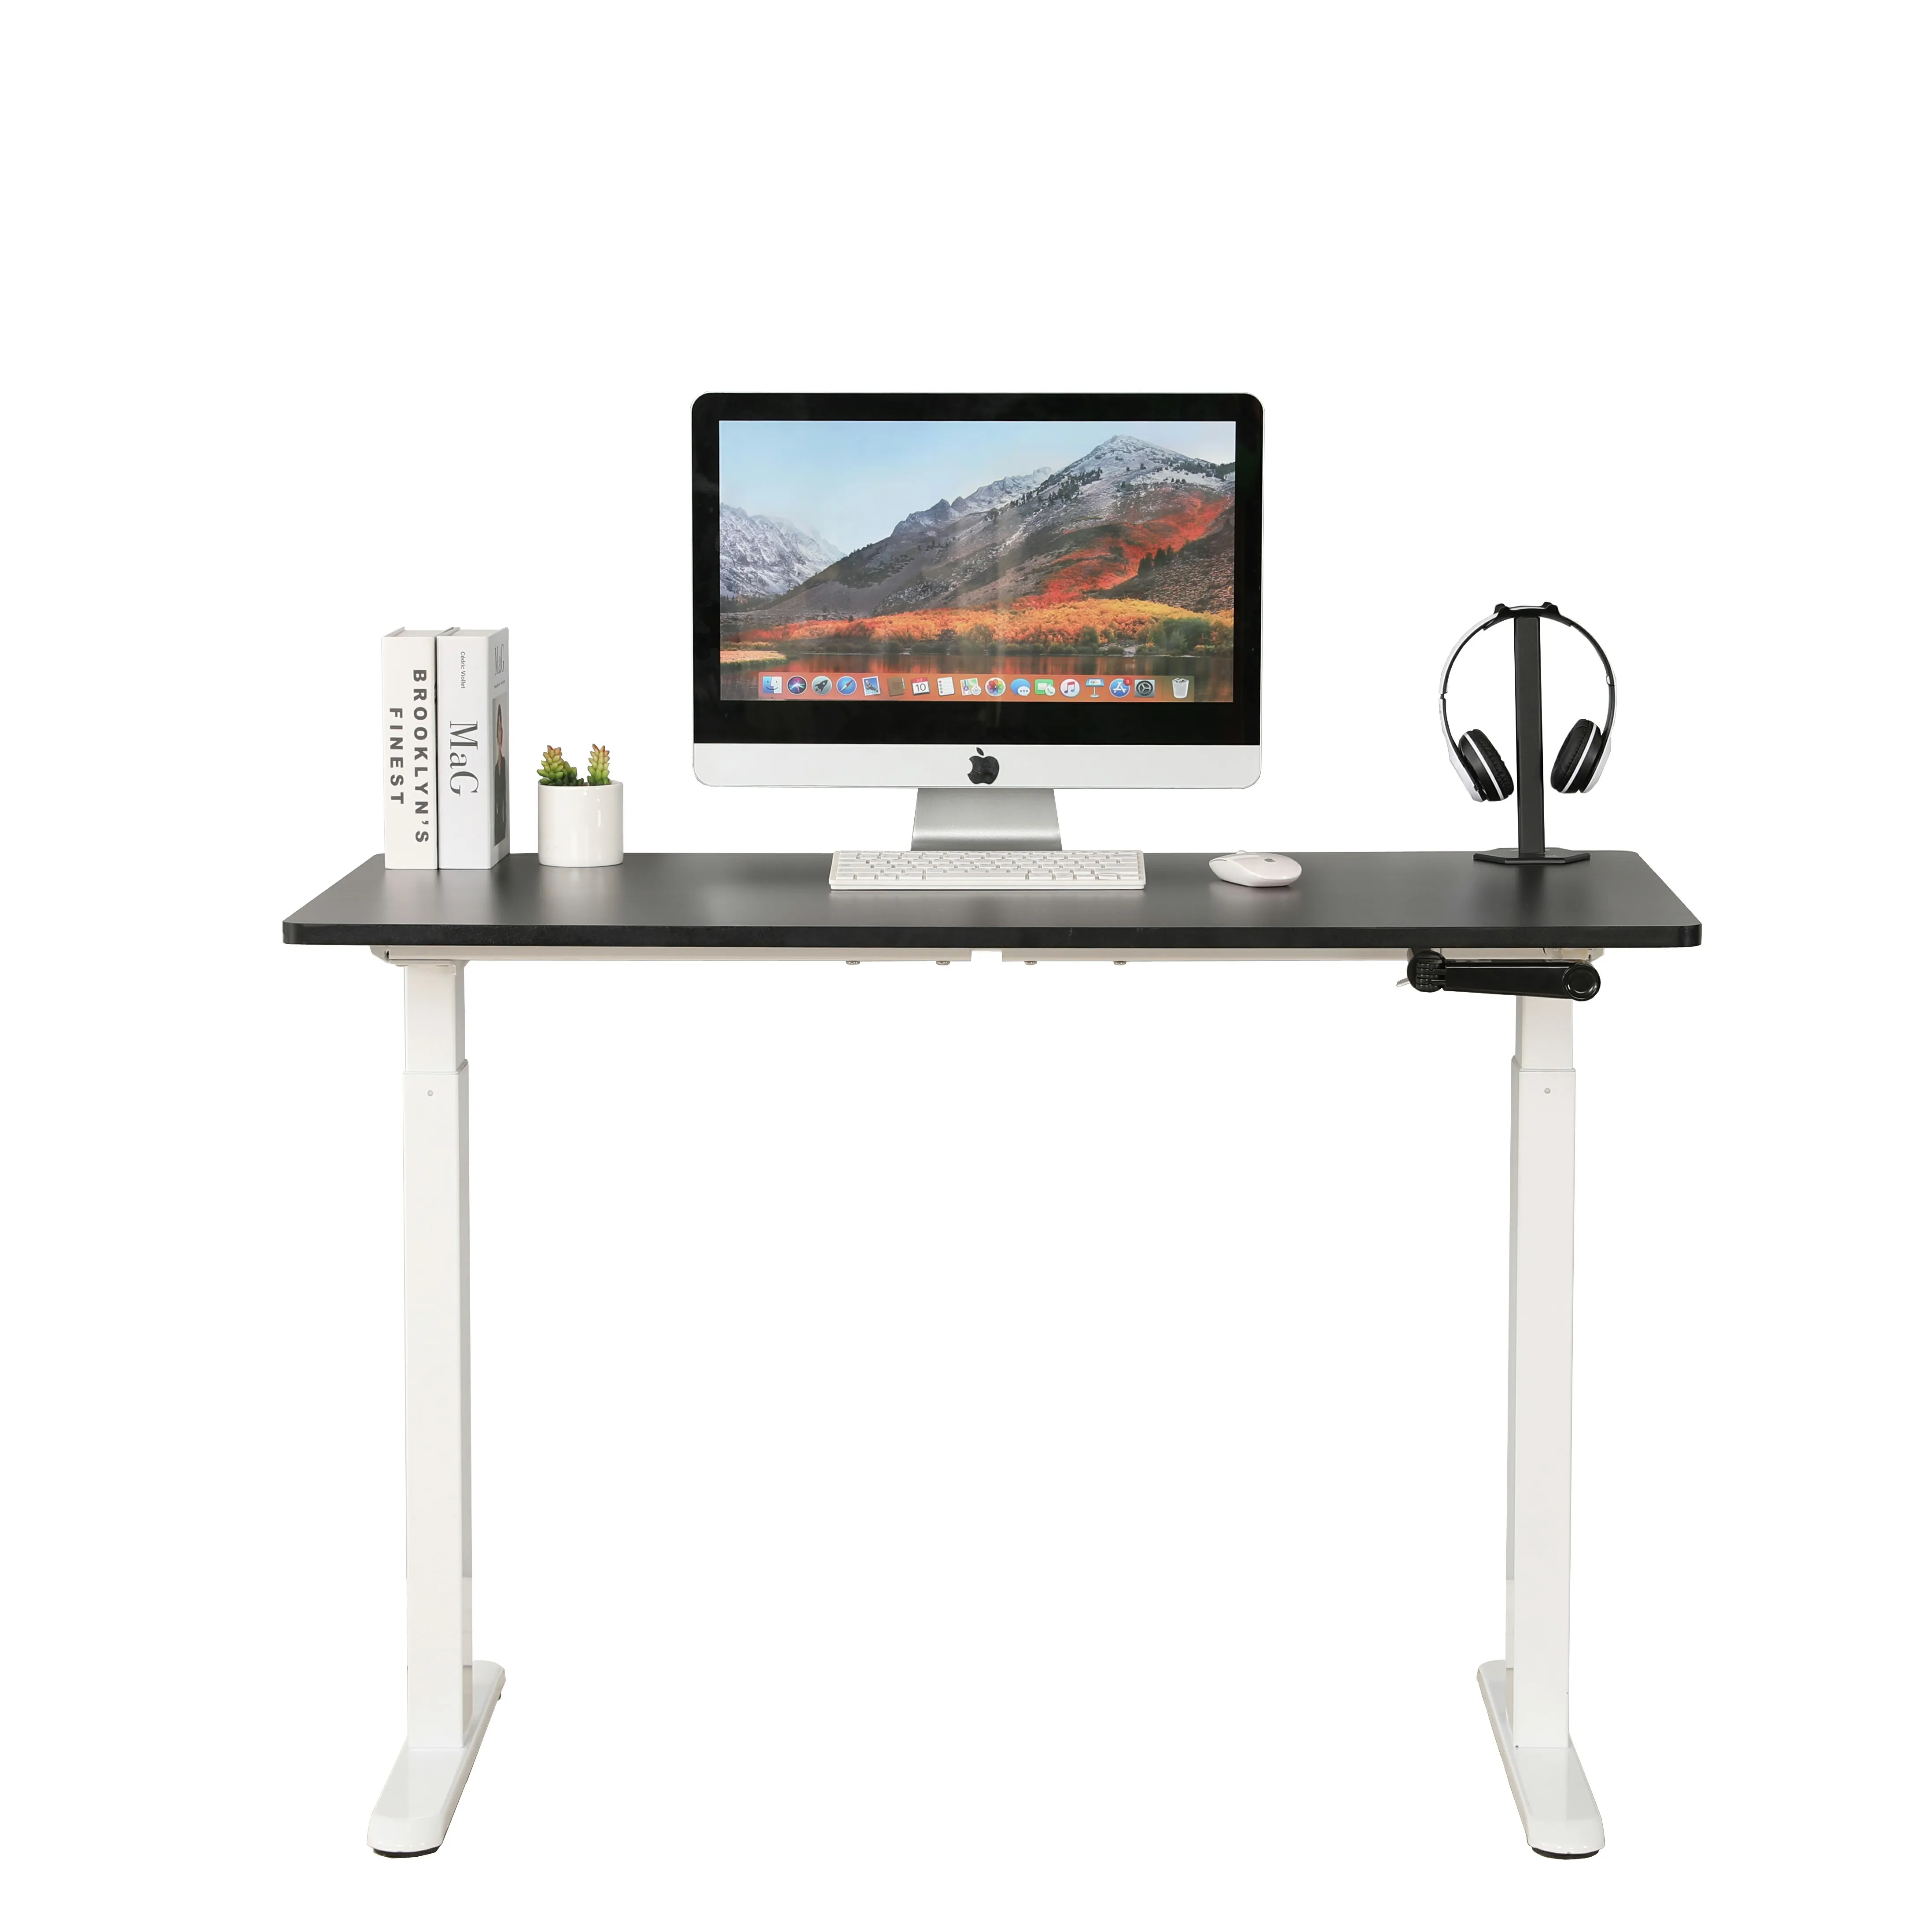 Эргономичный ручной регулируемый по высоте Смарт 55 дюймов стол с рабочим столом